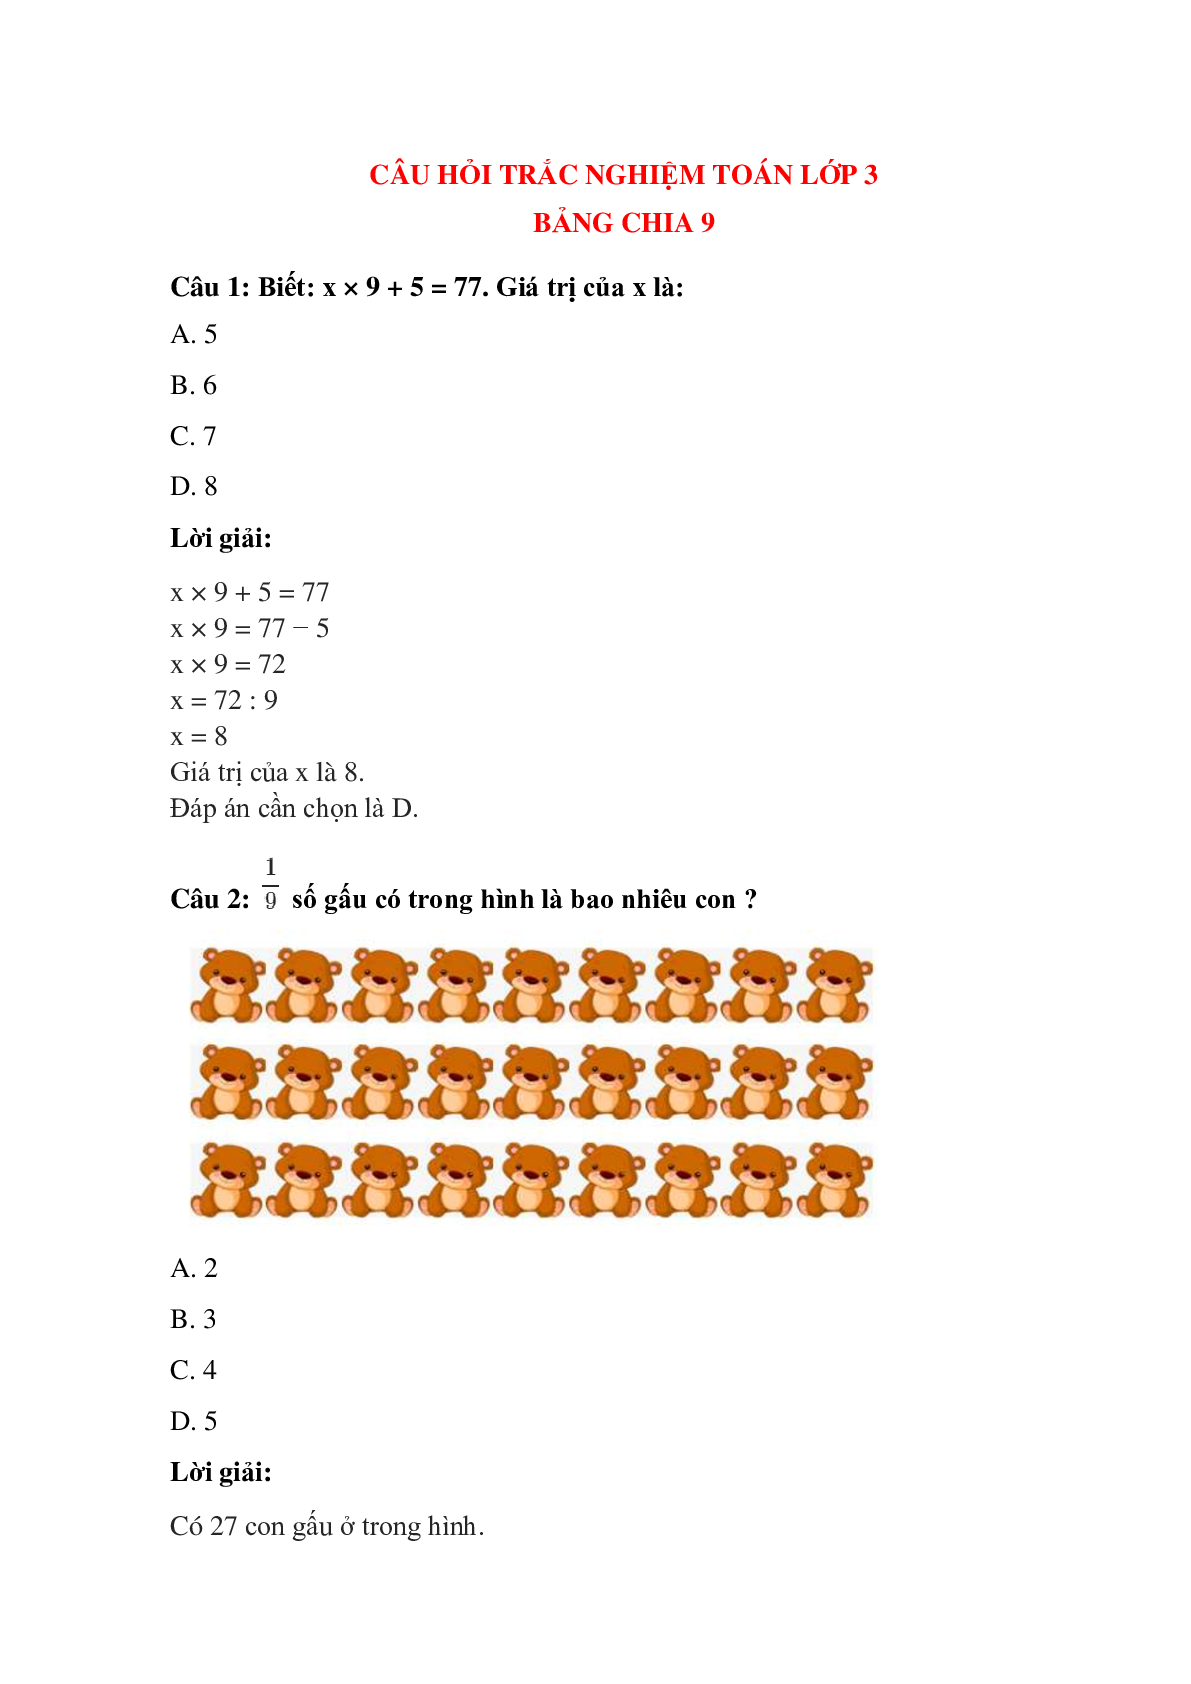 Trắc nghiệm Bảng chia 9 có đáp án – Toán lớp 3 (trang 1)